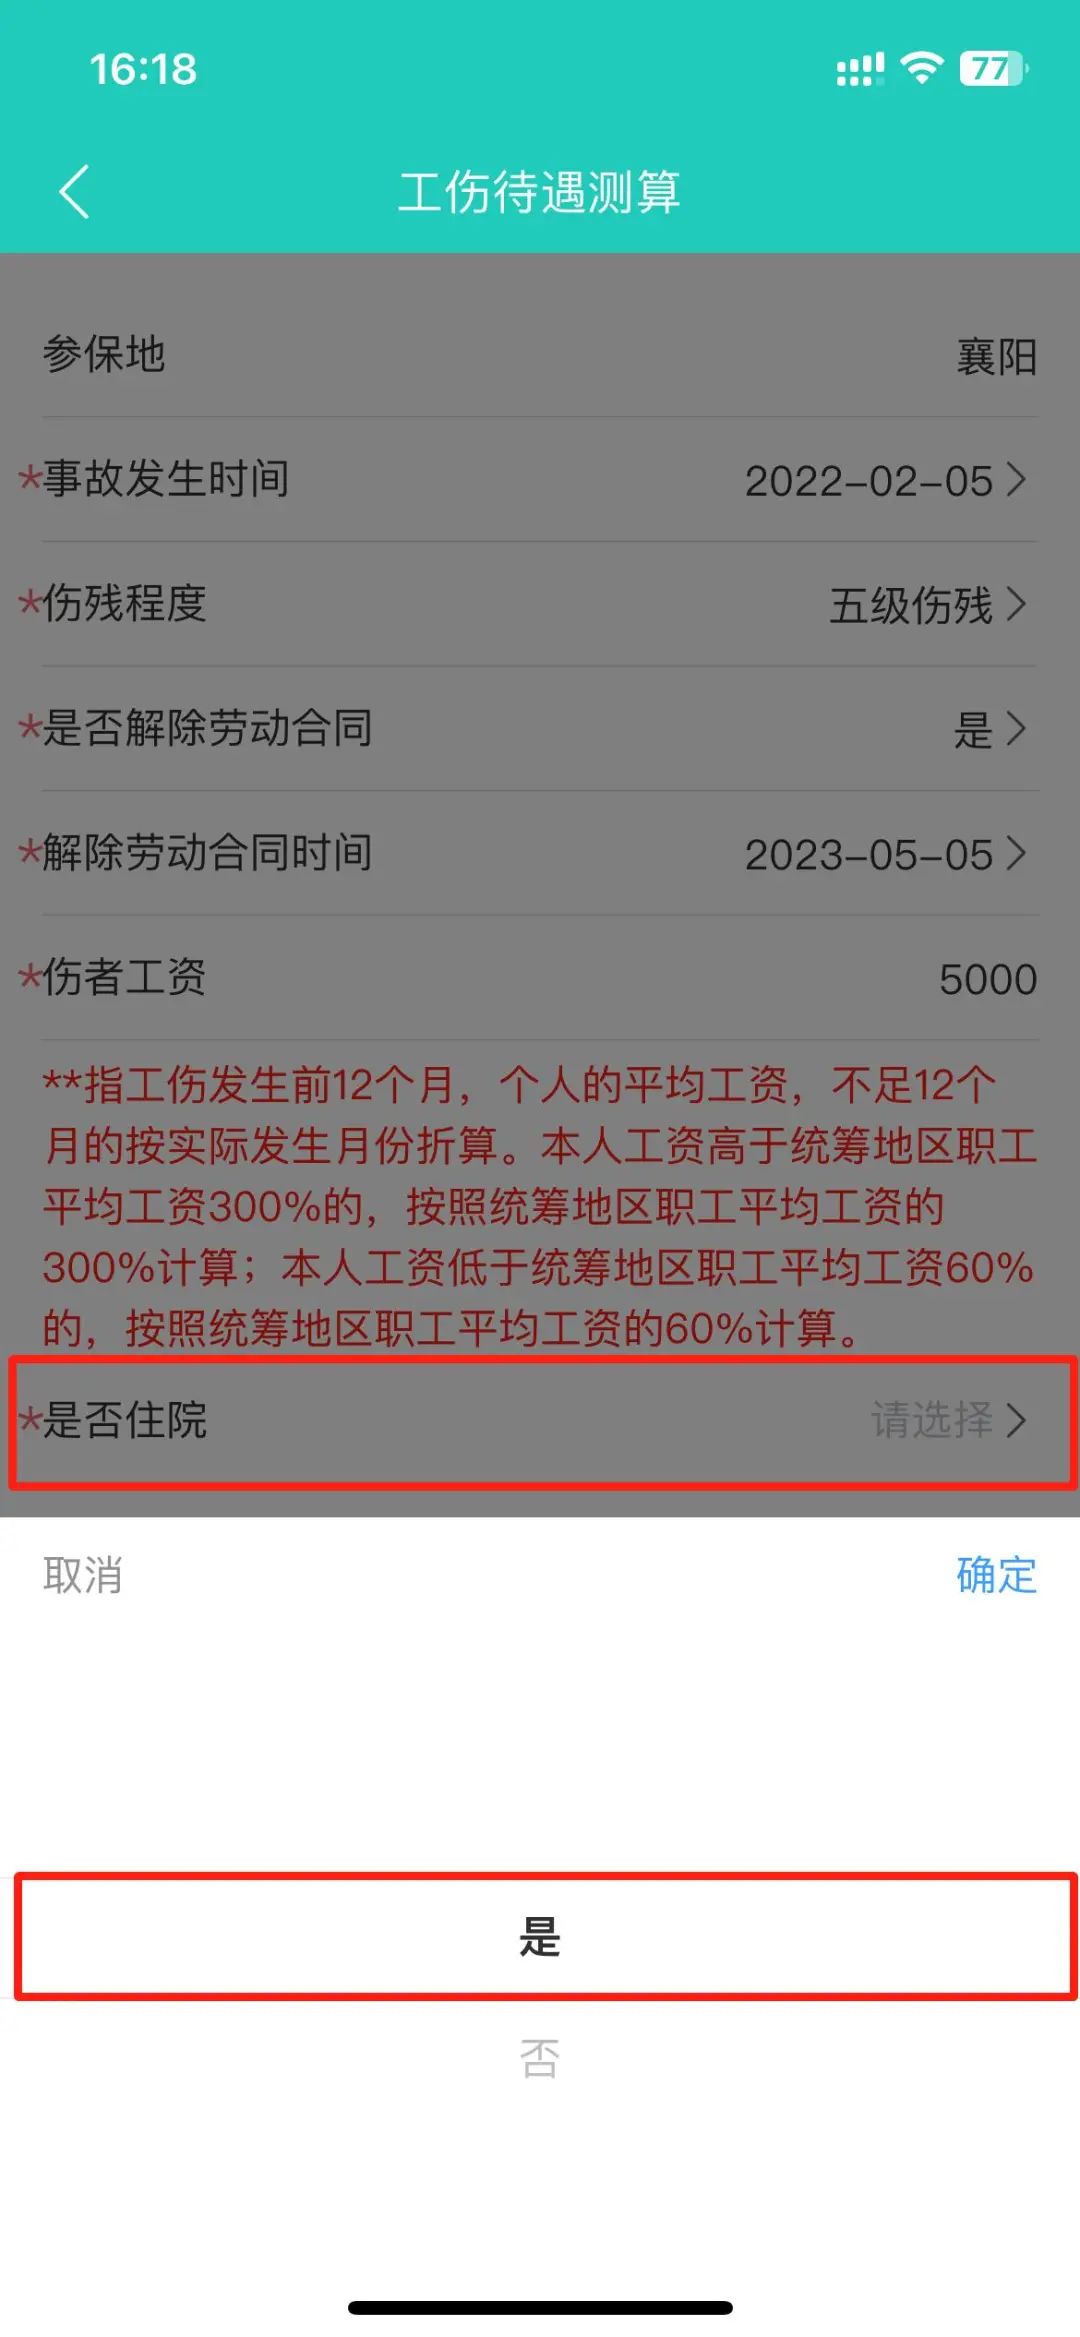 襄阳人社app测算工伤待遇